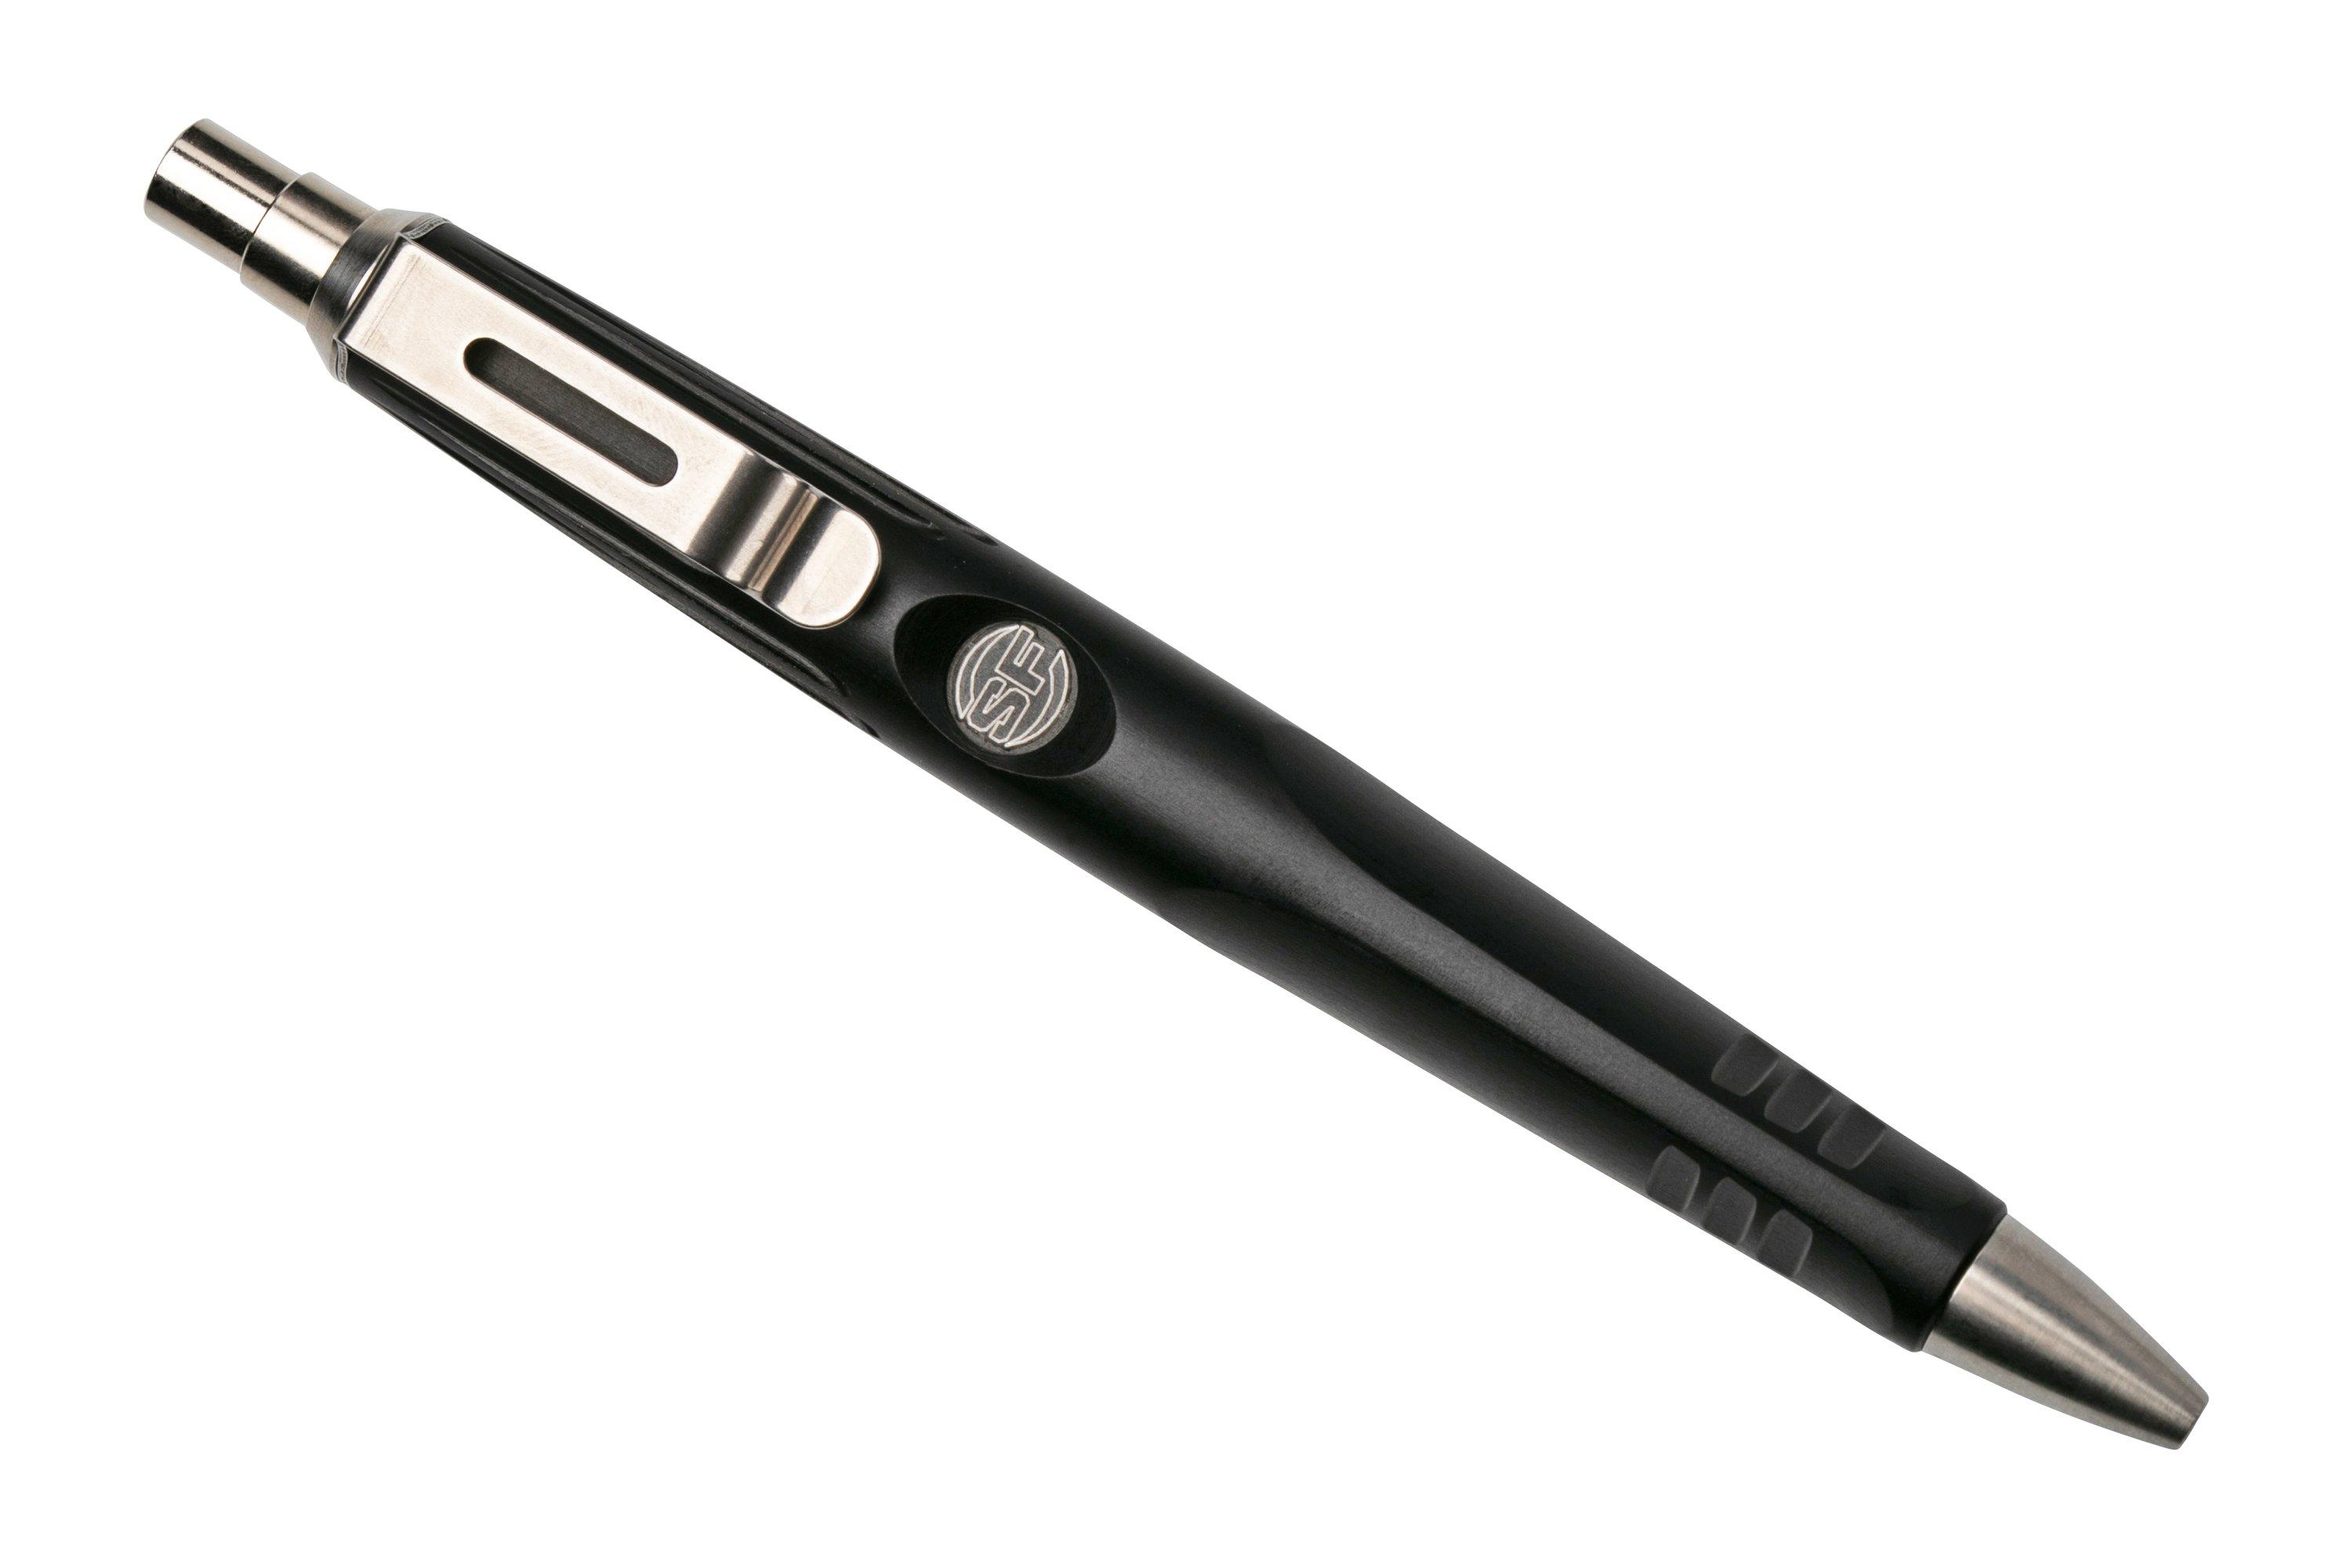 SureFire Pen IV, black, tactical pen | Advantageously shopping at